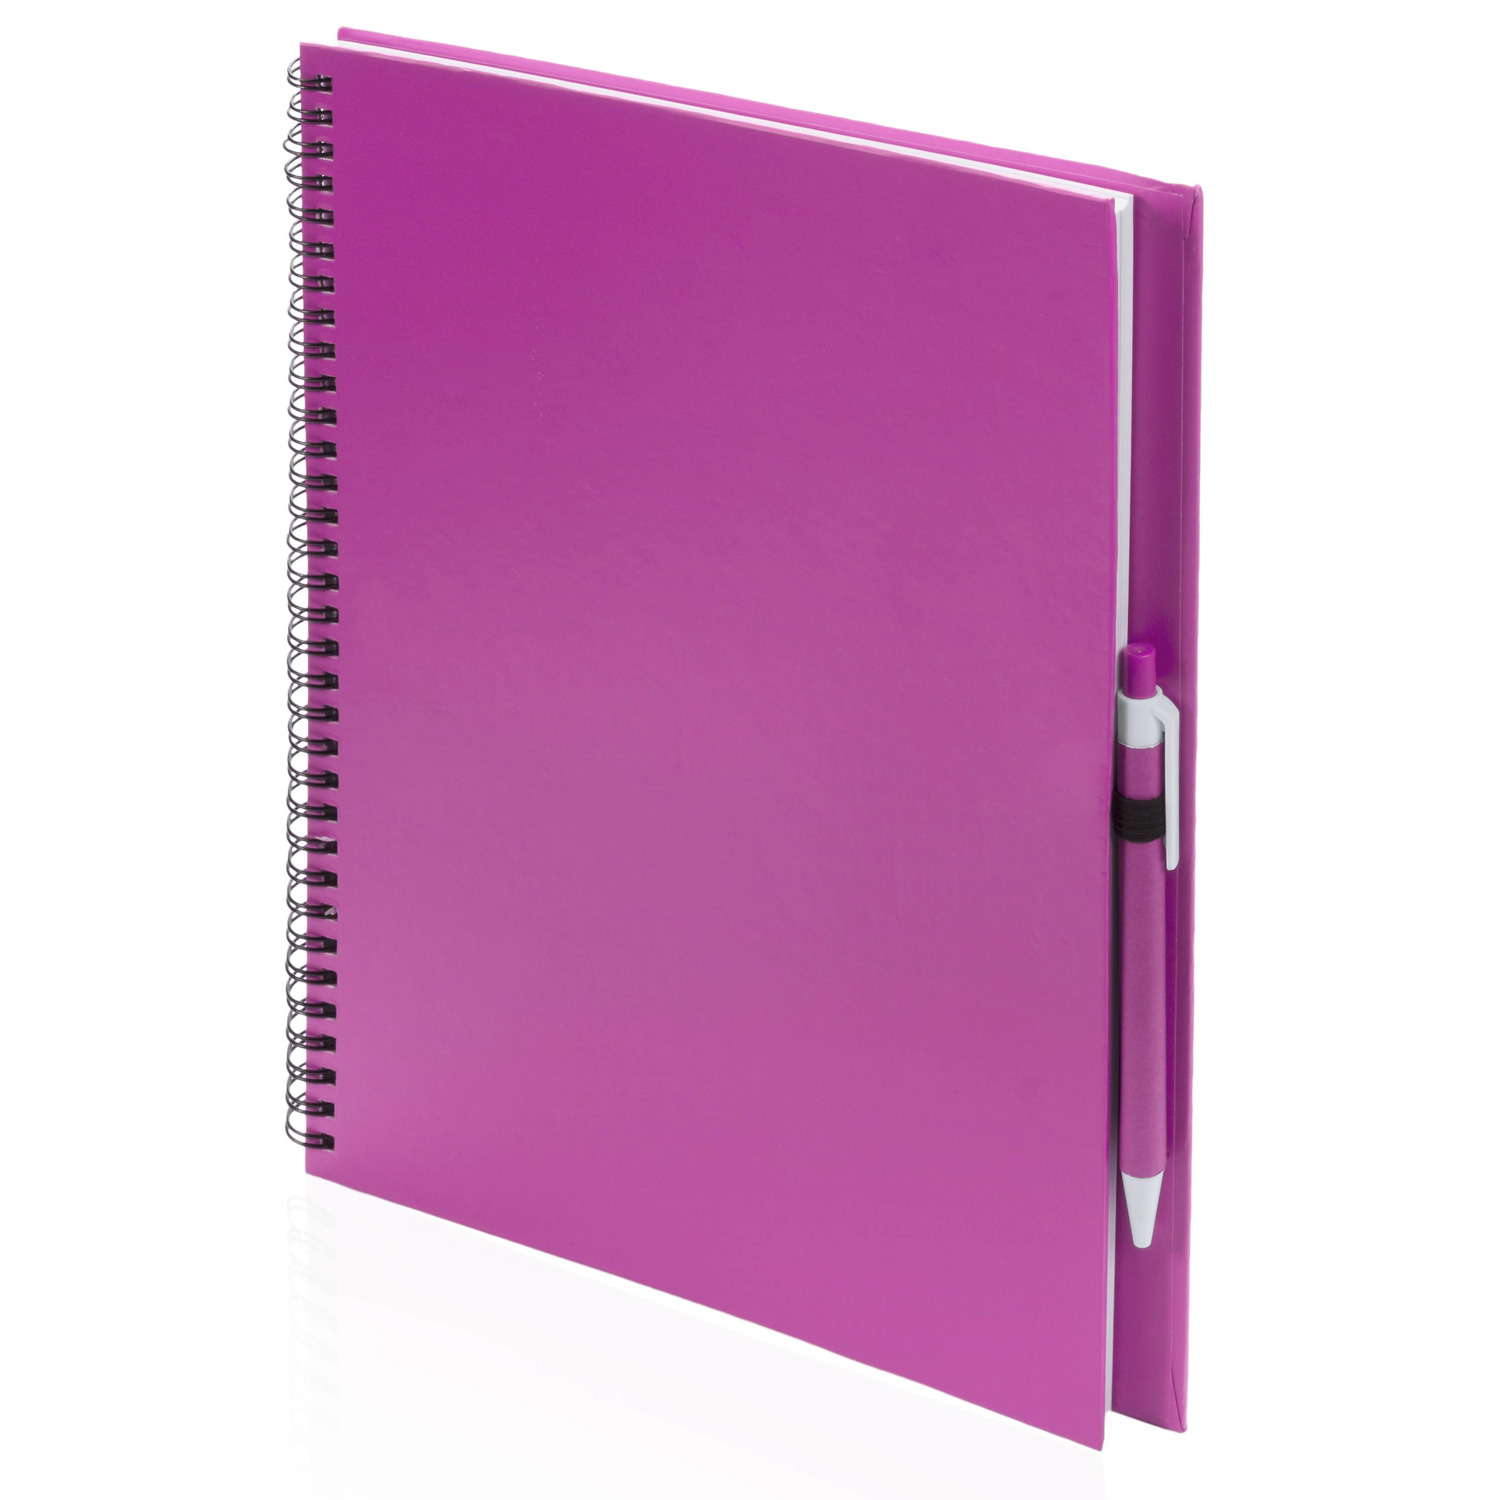 2x Schetsboeken-tekenboeken roze A4 formaat 80 vellen inclusief pennen